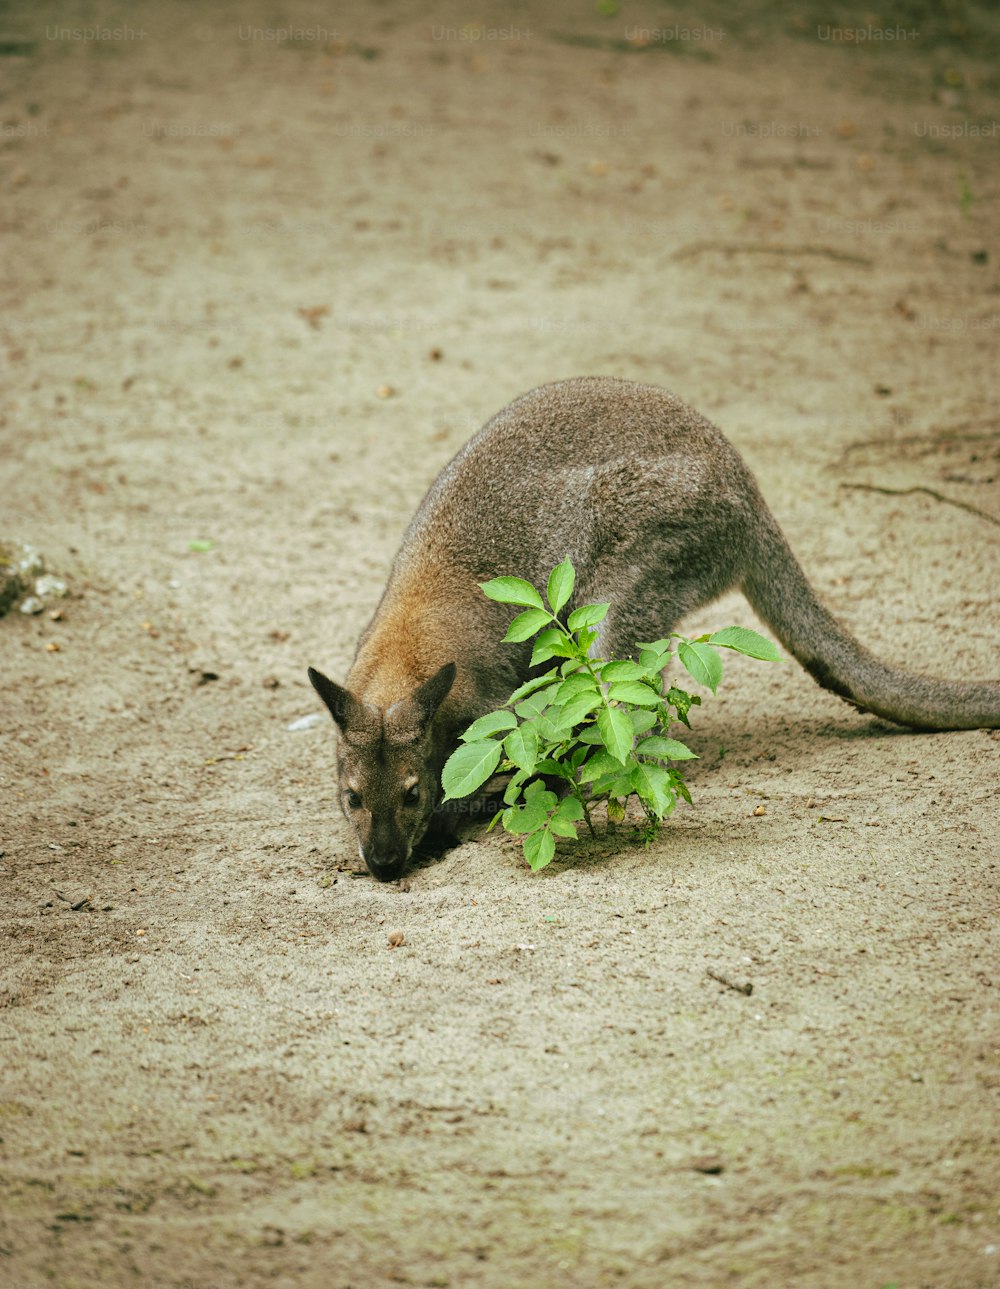 Un kangourou mangeant une plante dans la terre